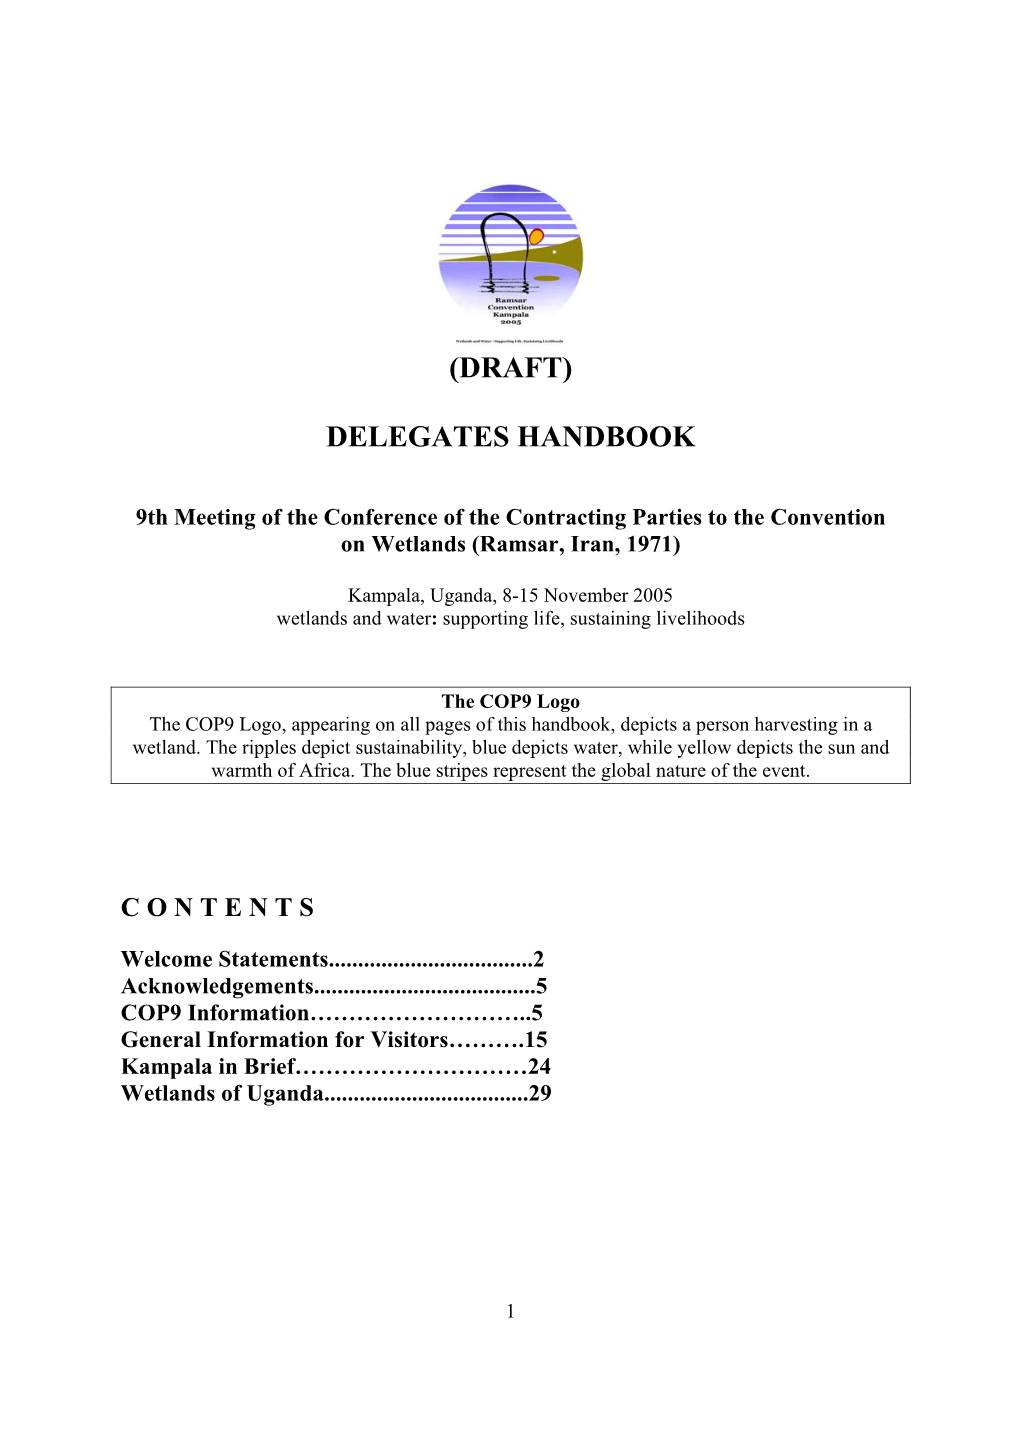 (Draft) Delegates Handbook